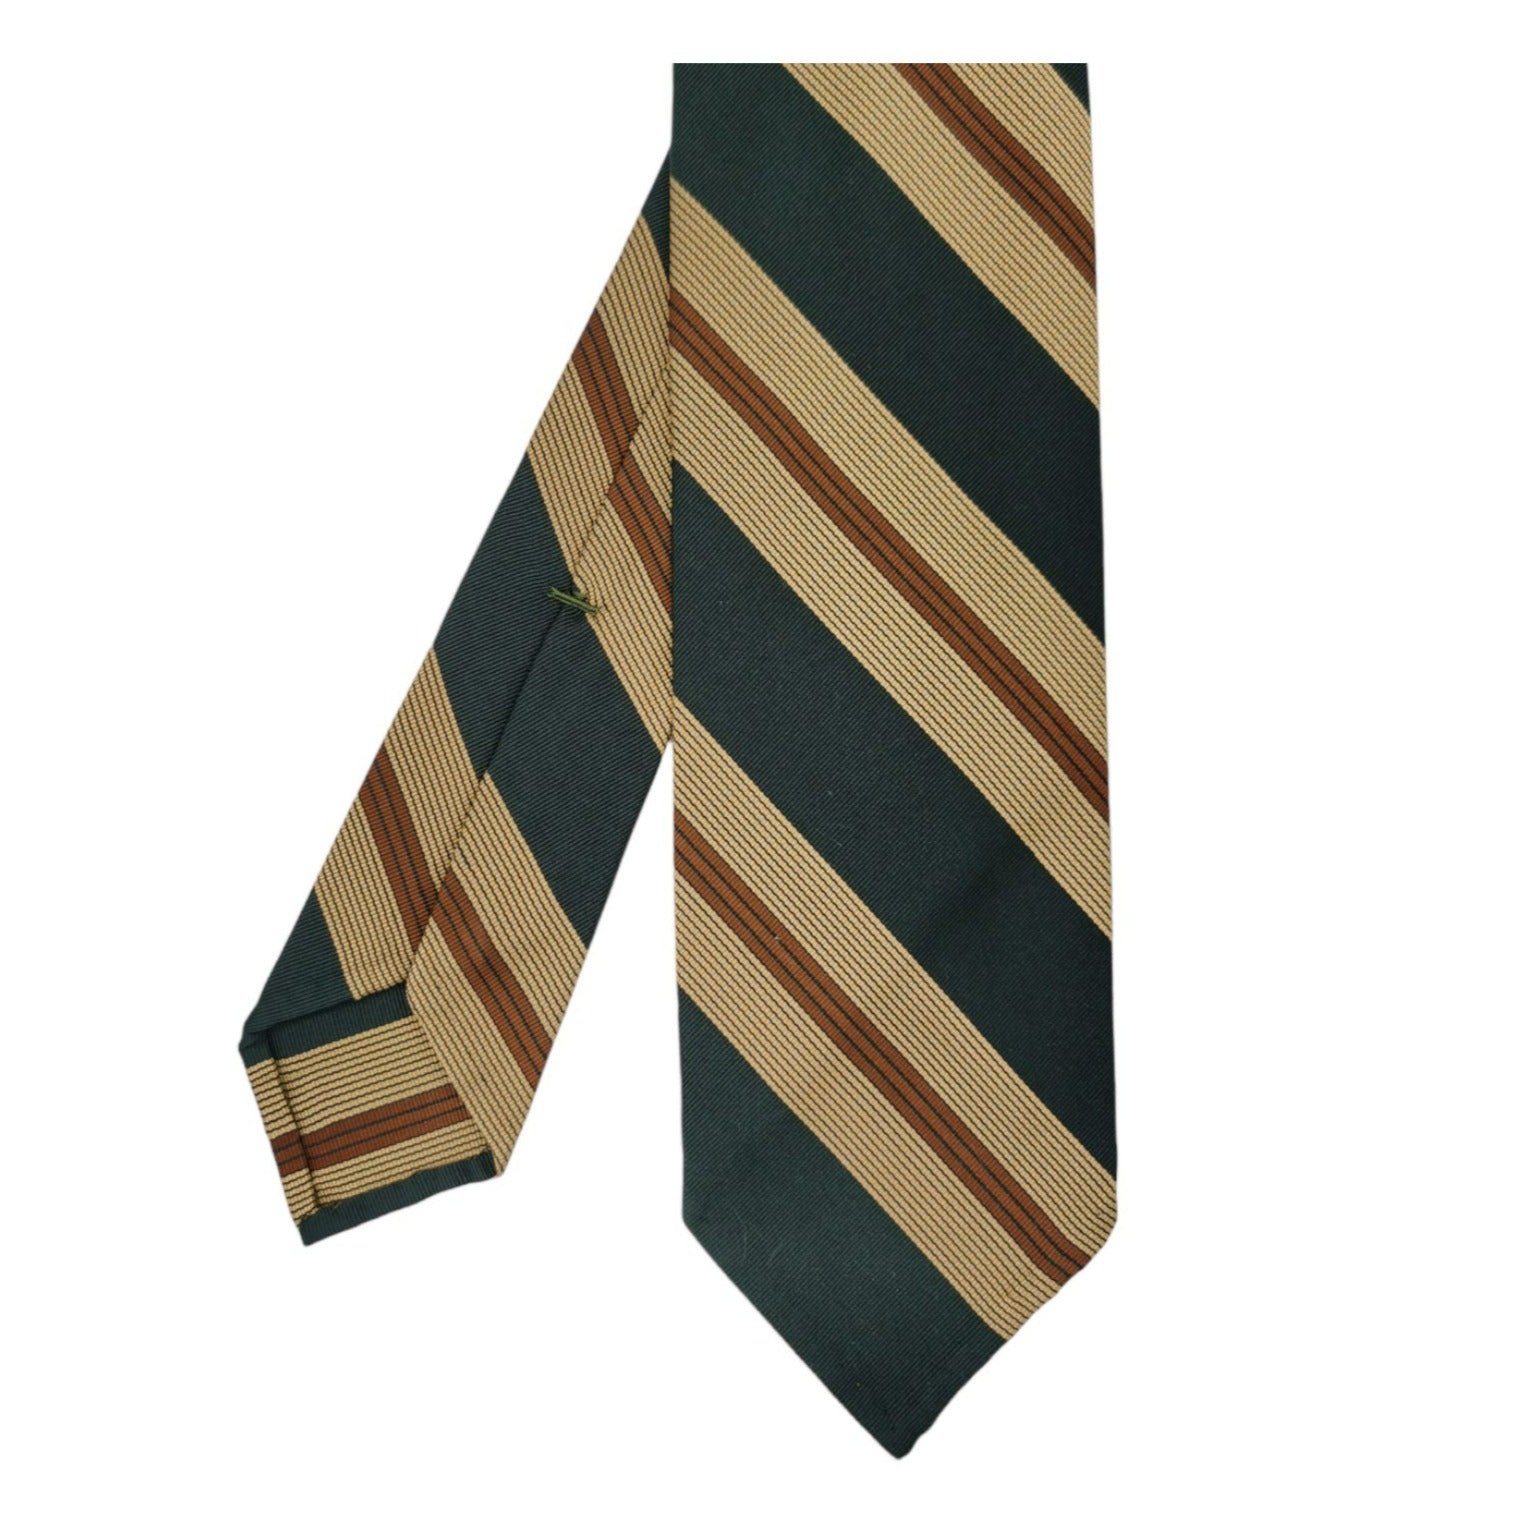 Anversa tie dark green background brown and sand stripes